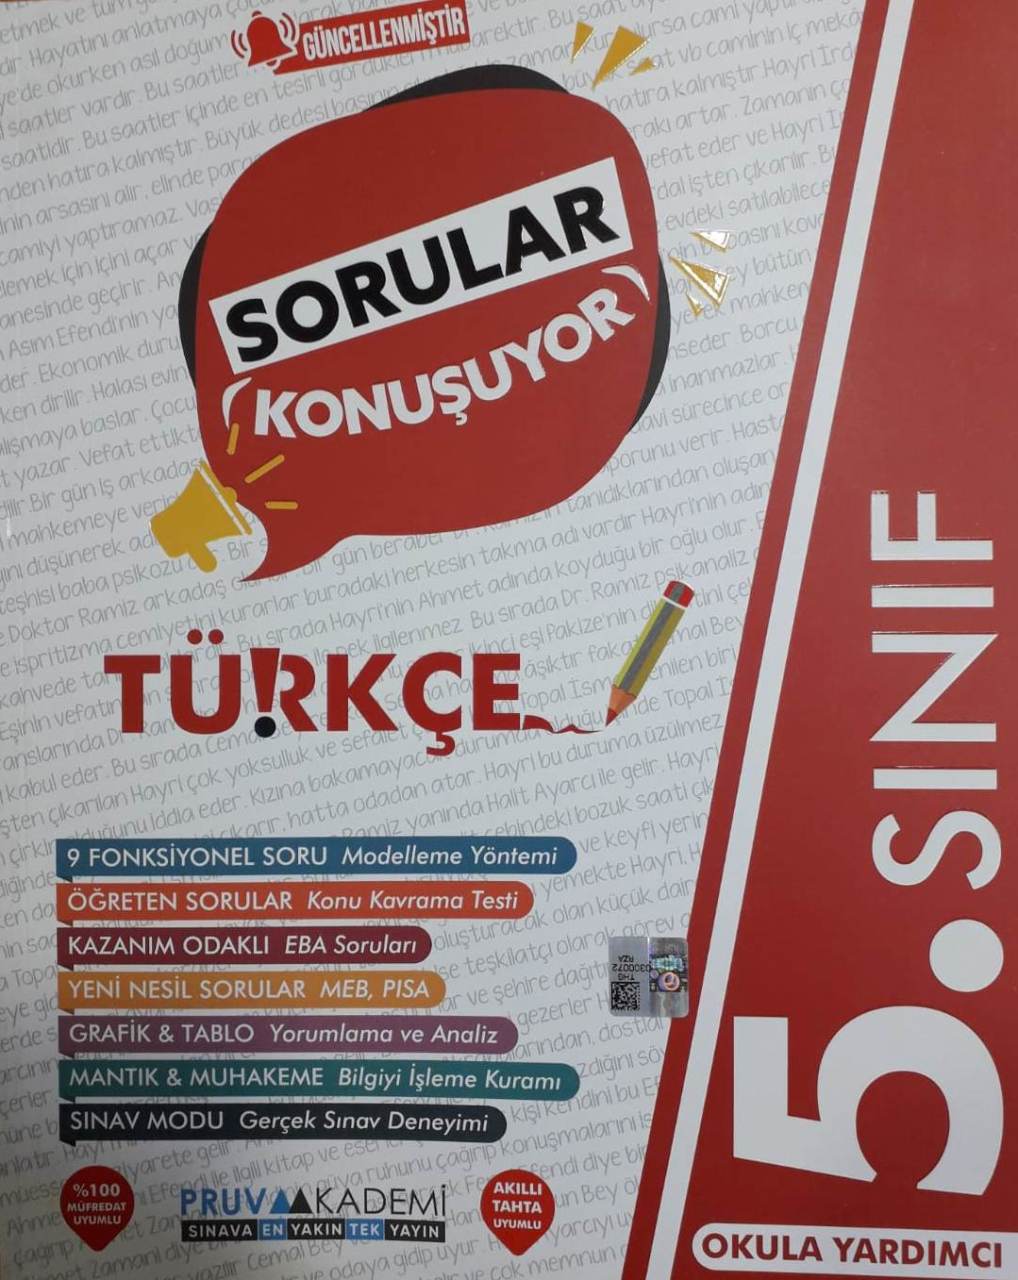 Pruva Akademi 5.Sınıf Yeni Türkçe GÜNCEL Sorular Konuşuyor Soru Bankası